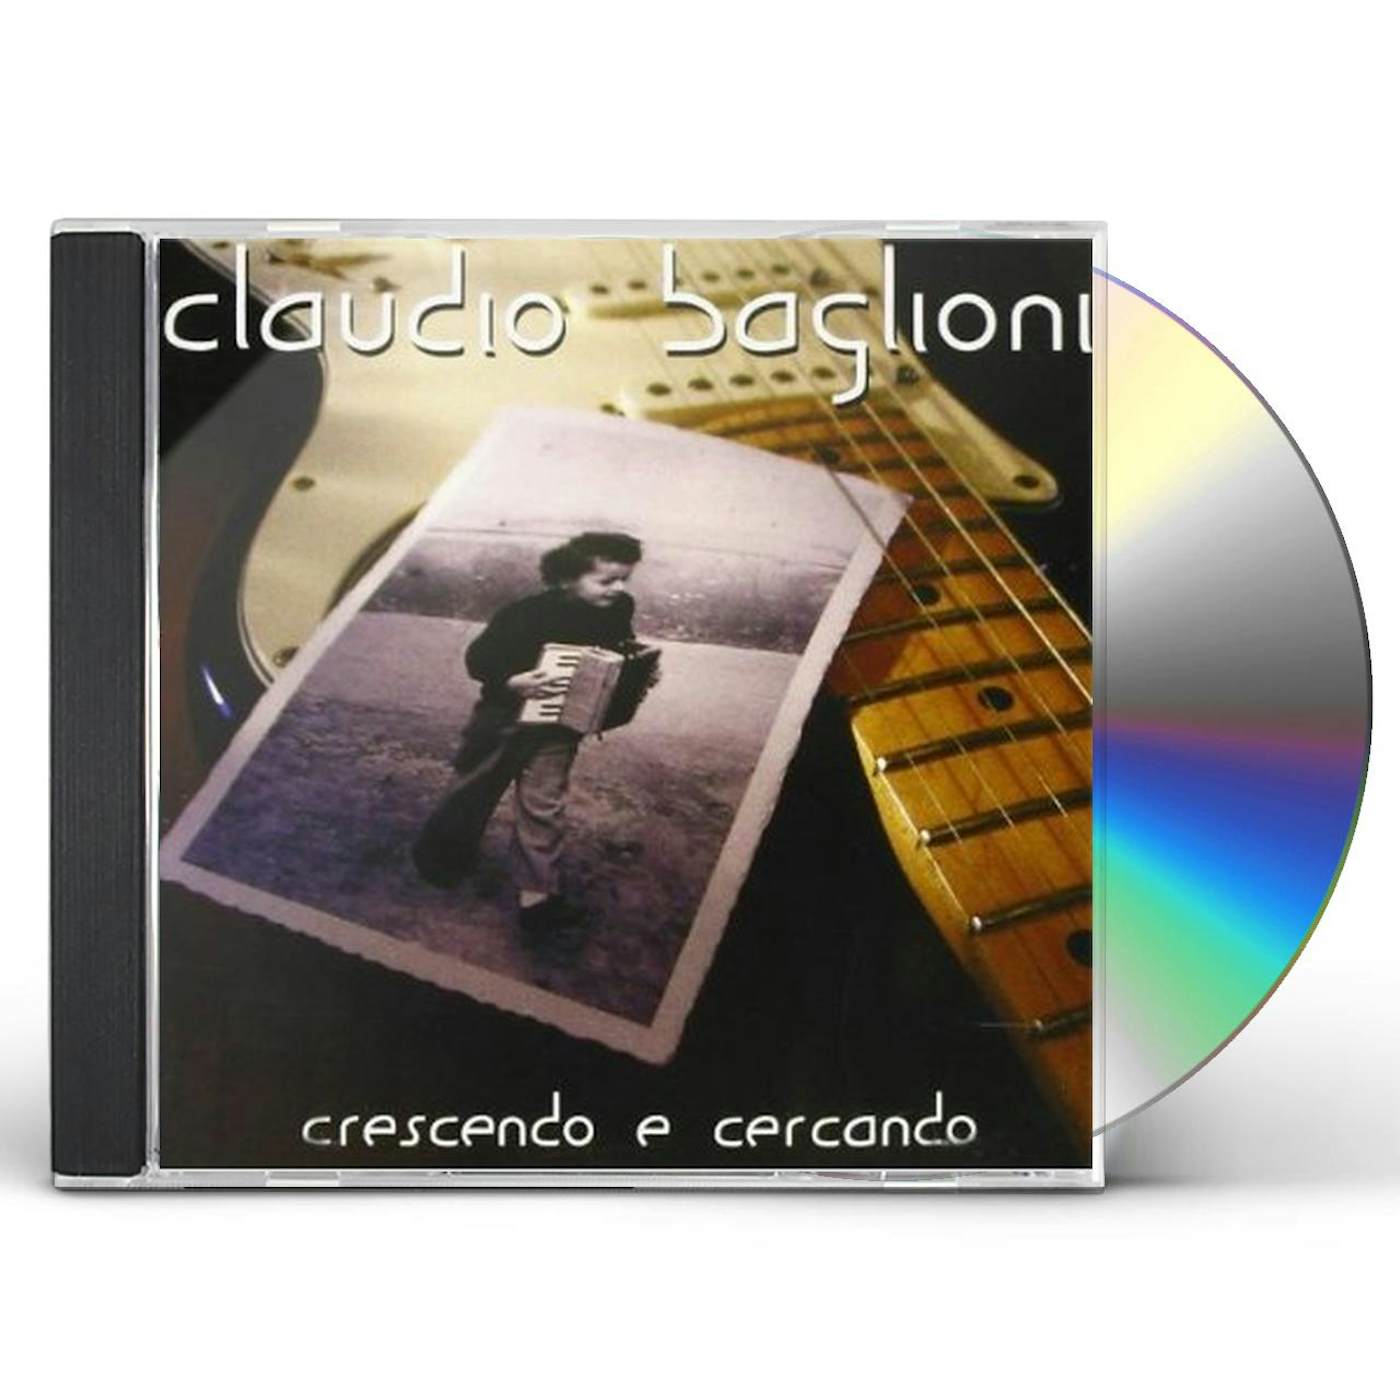 Claudio Baglioni LA VITA E'ADESSO CD